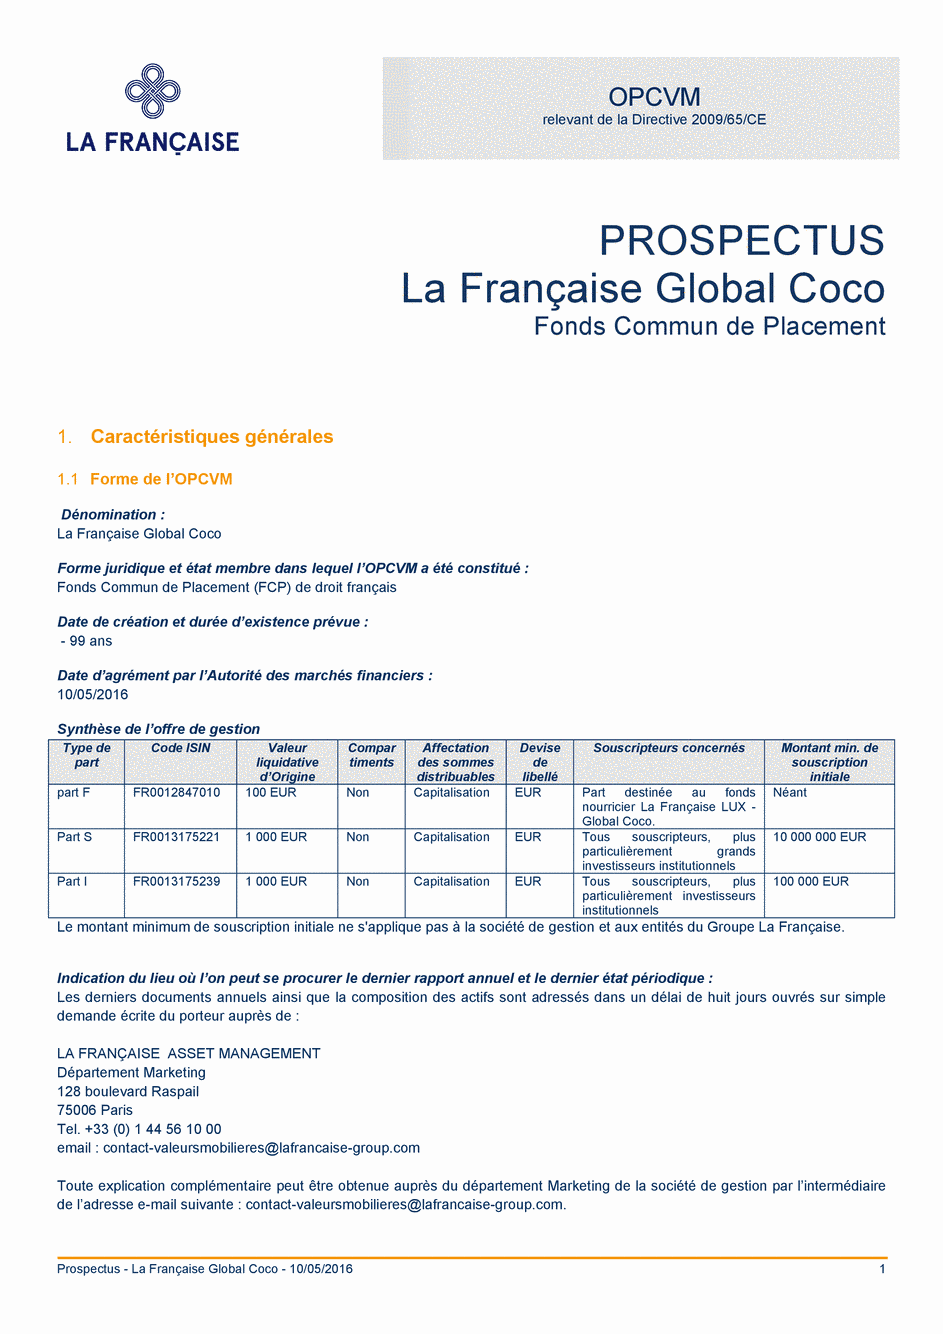 Prospectus La Française Global Coco - Part I - 10/05/2016 - Français